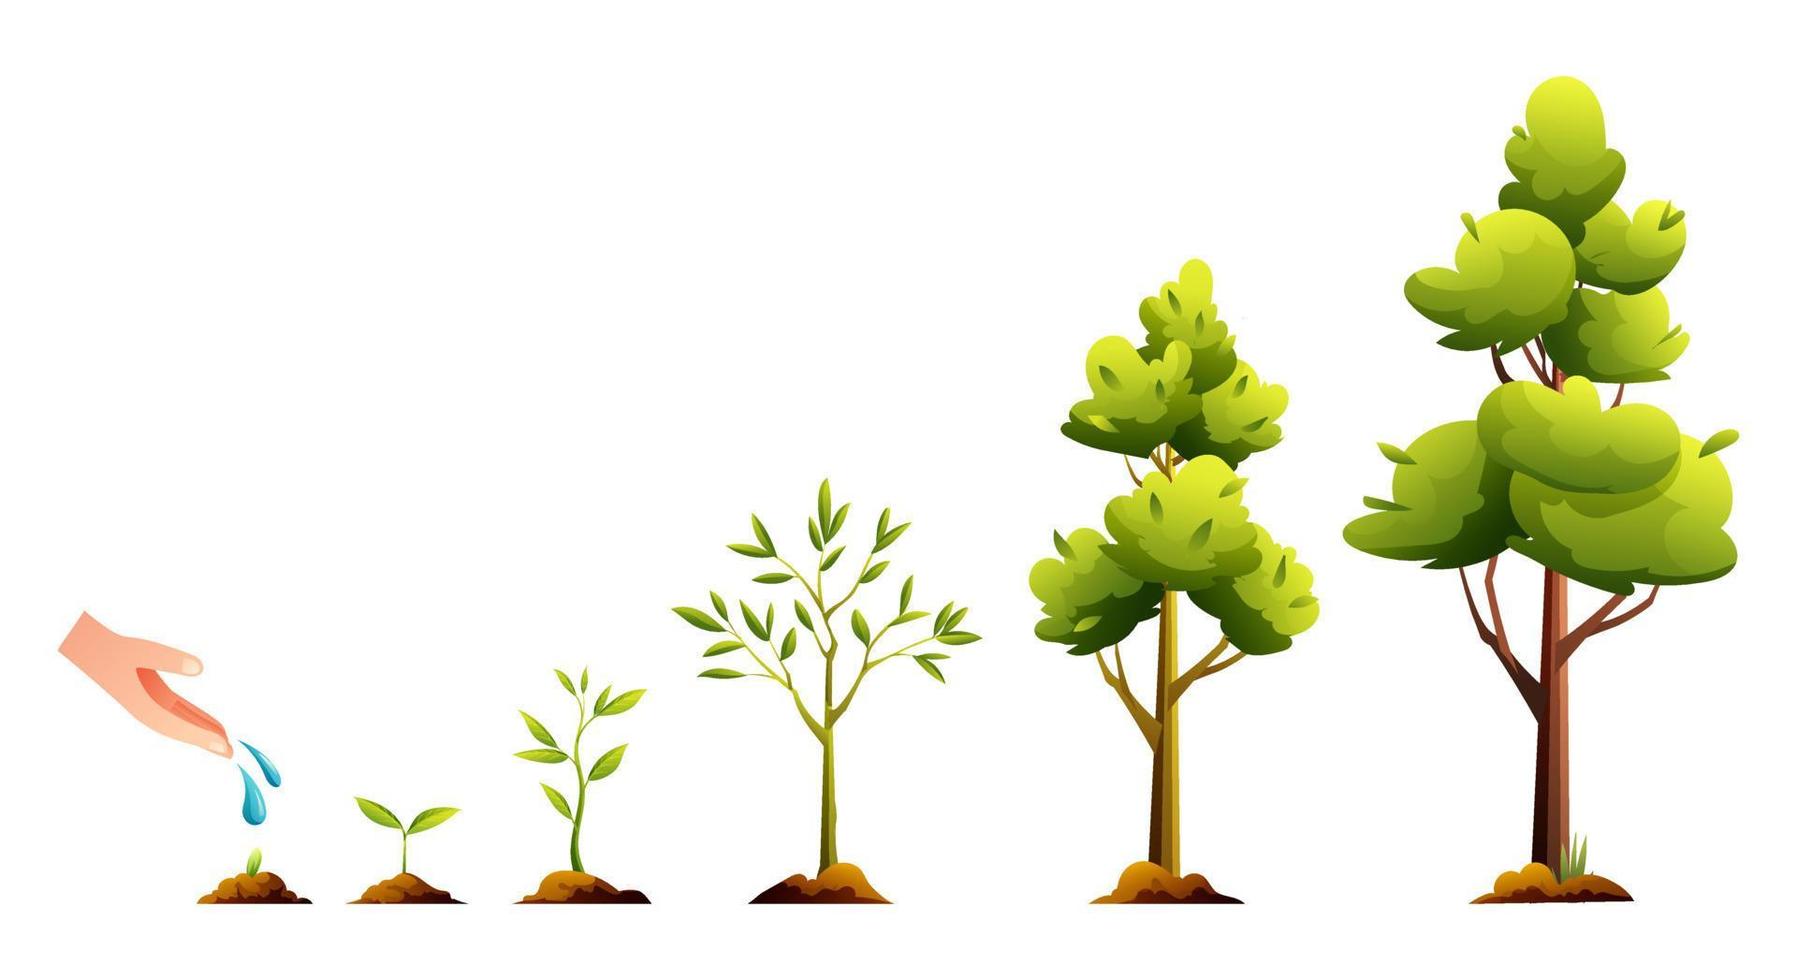 ciclo de vida da árvore. ilustração de desenhos animados de estágios de crescimento e desenvolvimento de plantas vetor